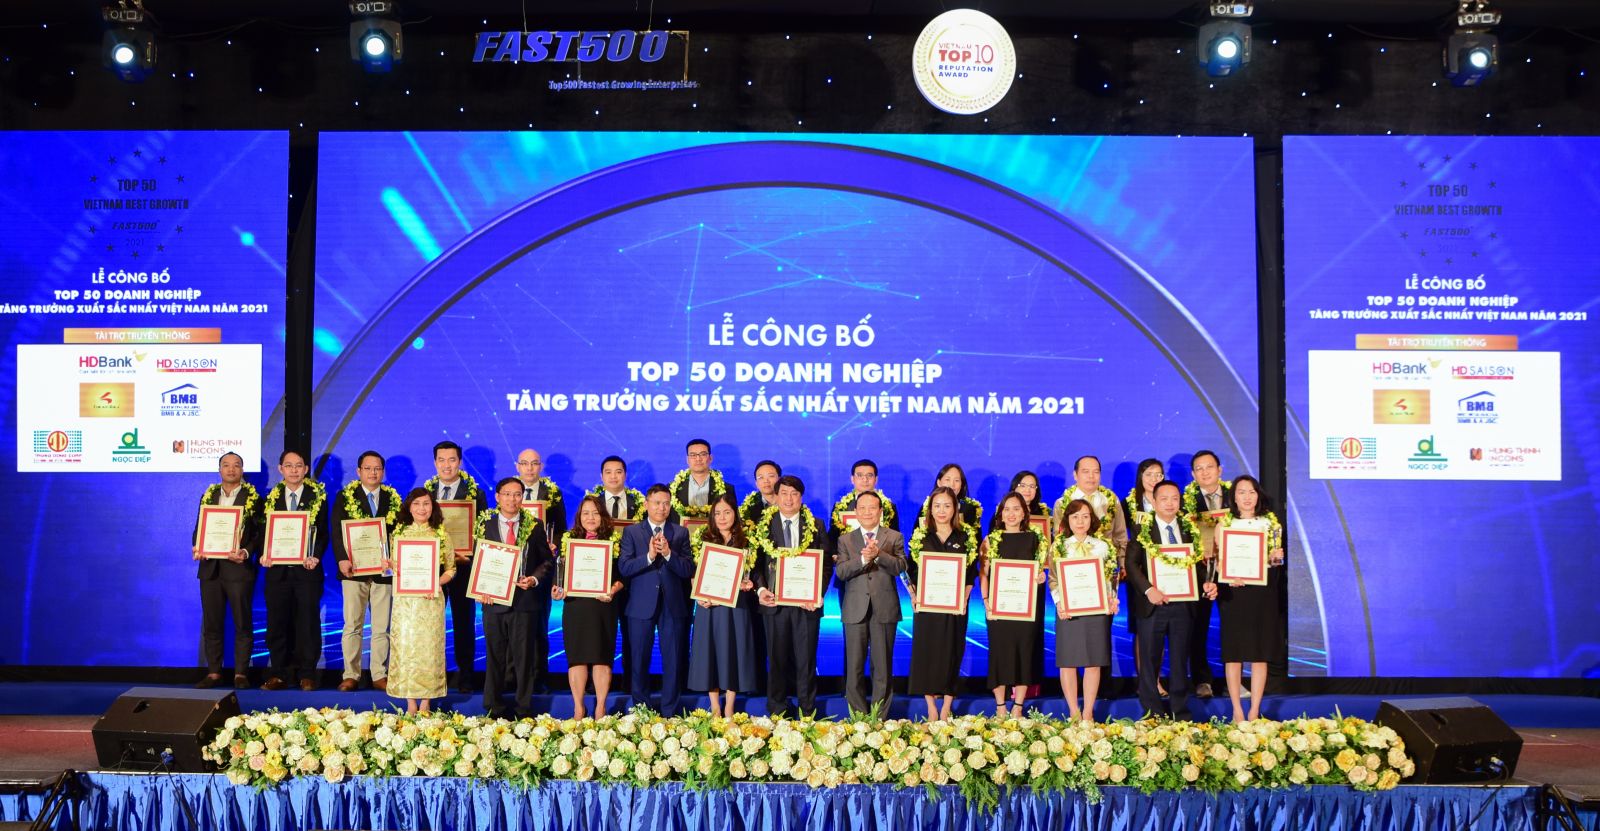 Top 50 Doanh nghiệp tăng trưởng xuất sắc nhất Việt Nam năm 2021.